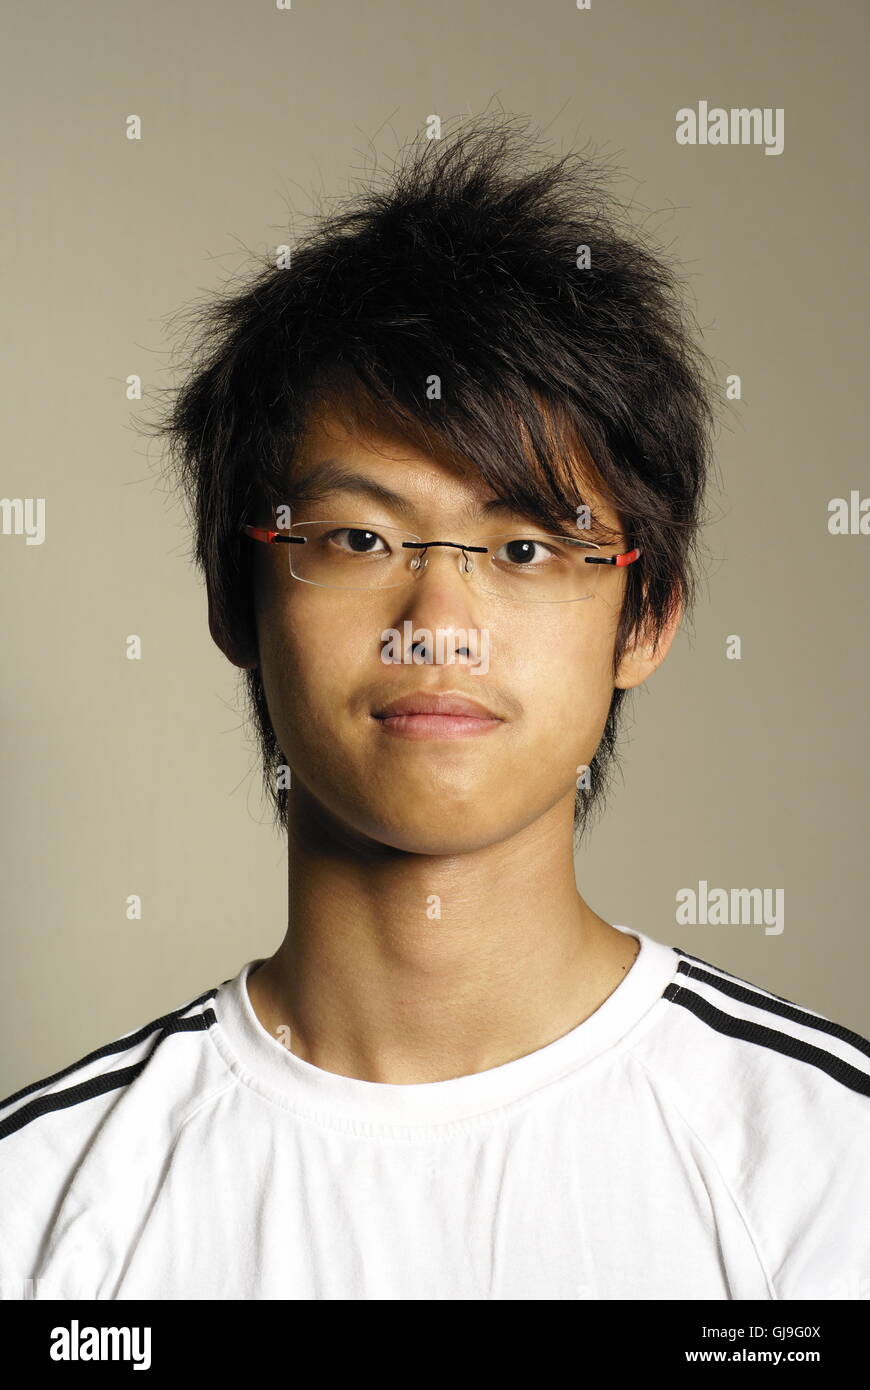 Junge asiatische Mann Porträt Stockfoto